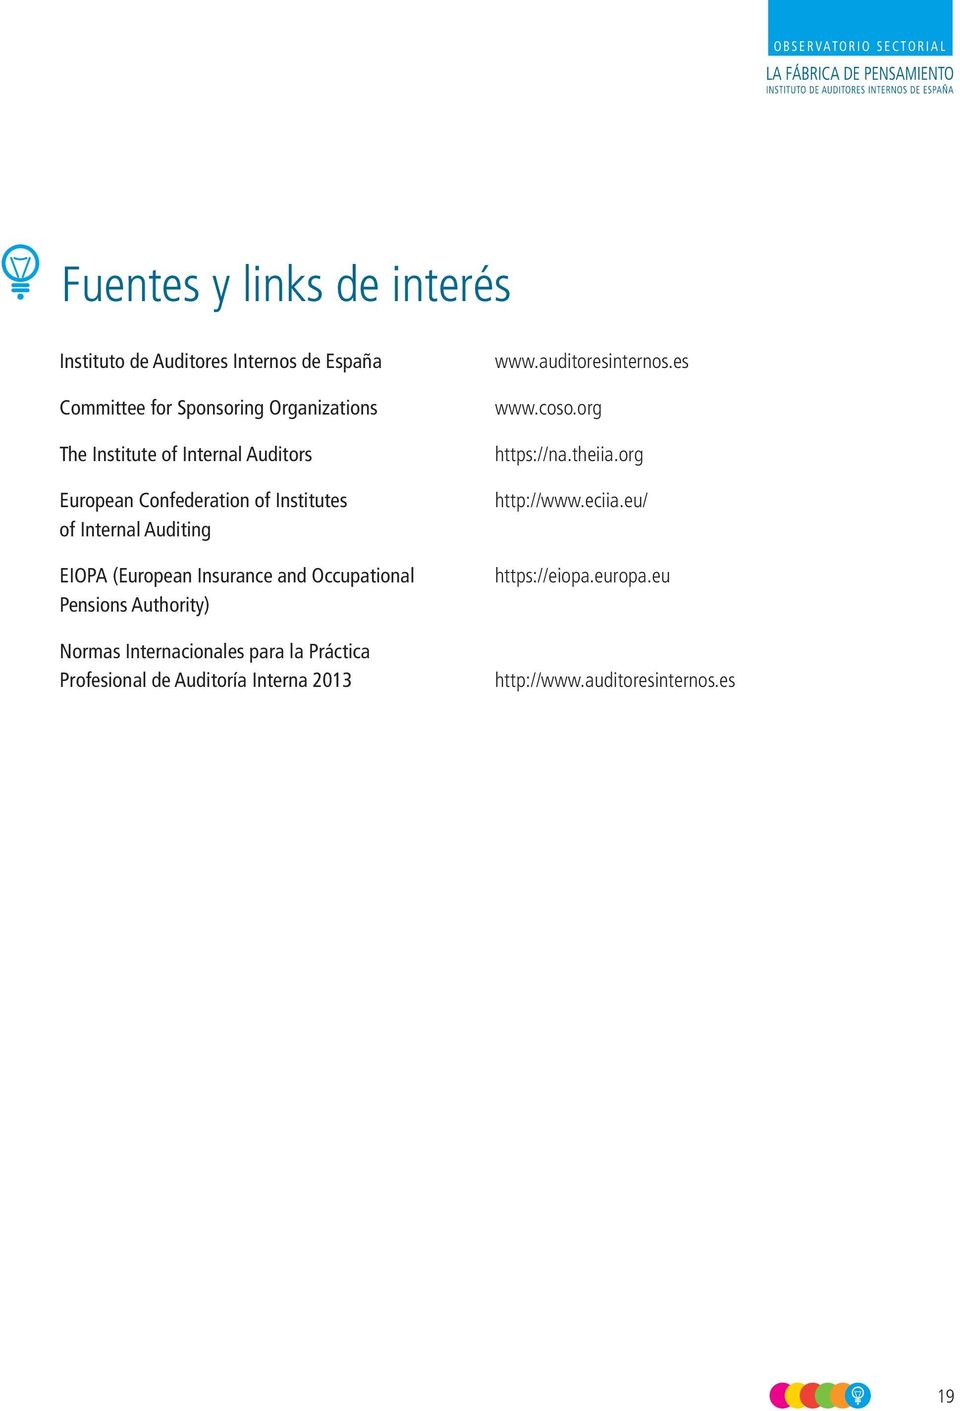 Occupational Pensions Authority) Normas Internacionales para la Práctica Profesional de Auditoría Interna 2013 www.